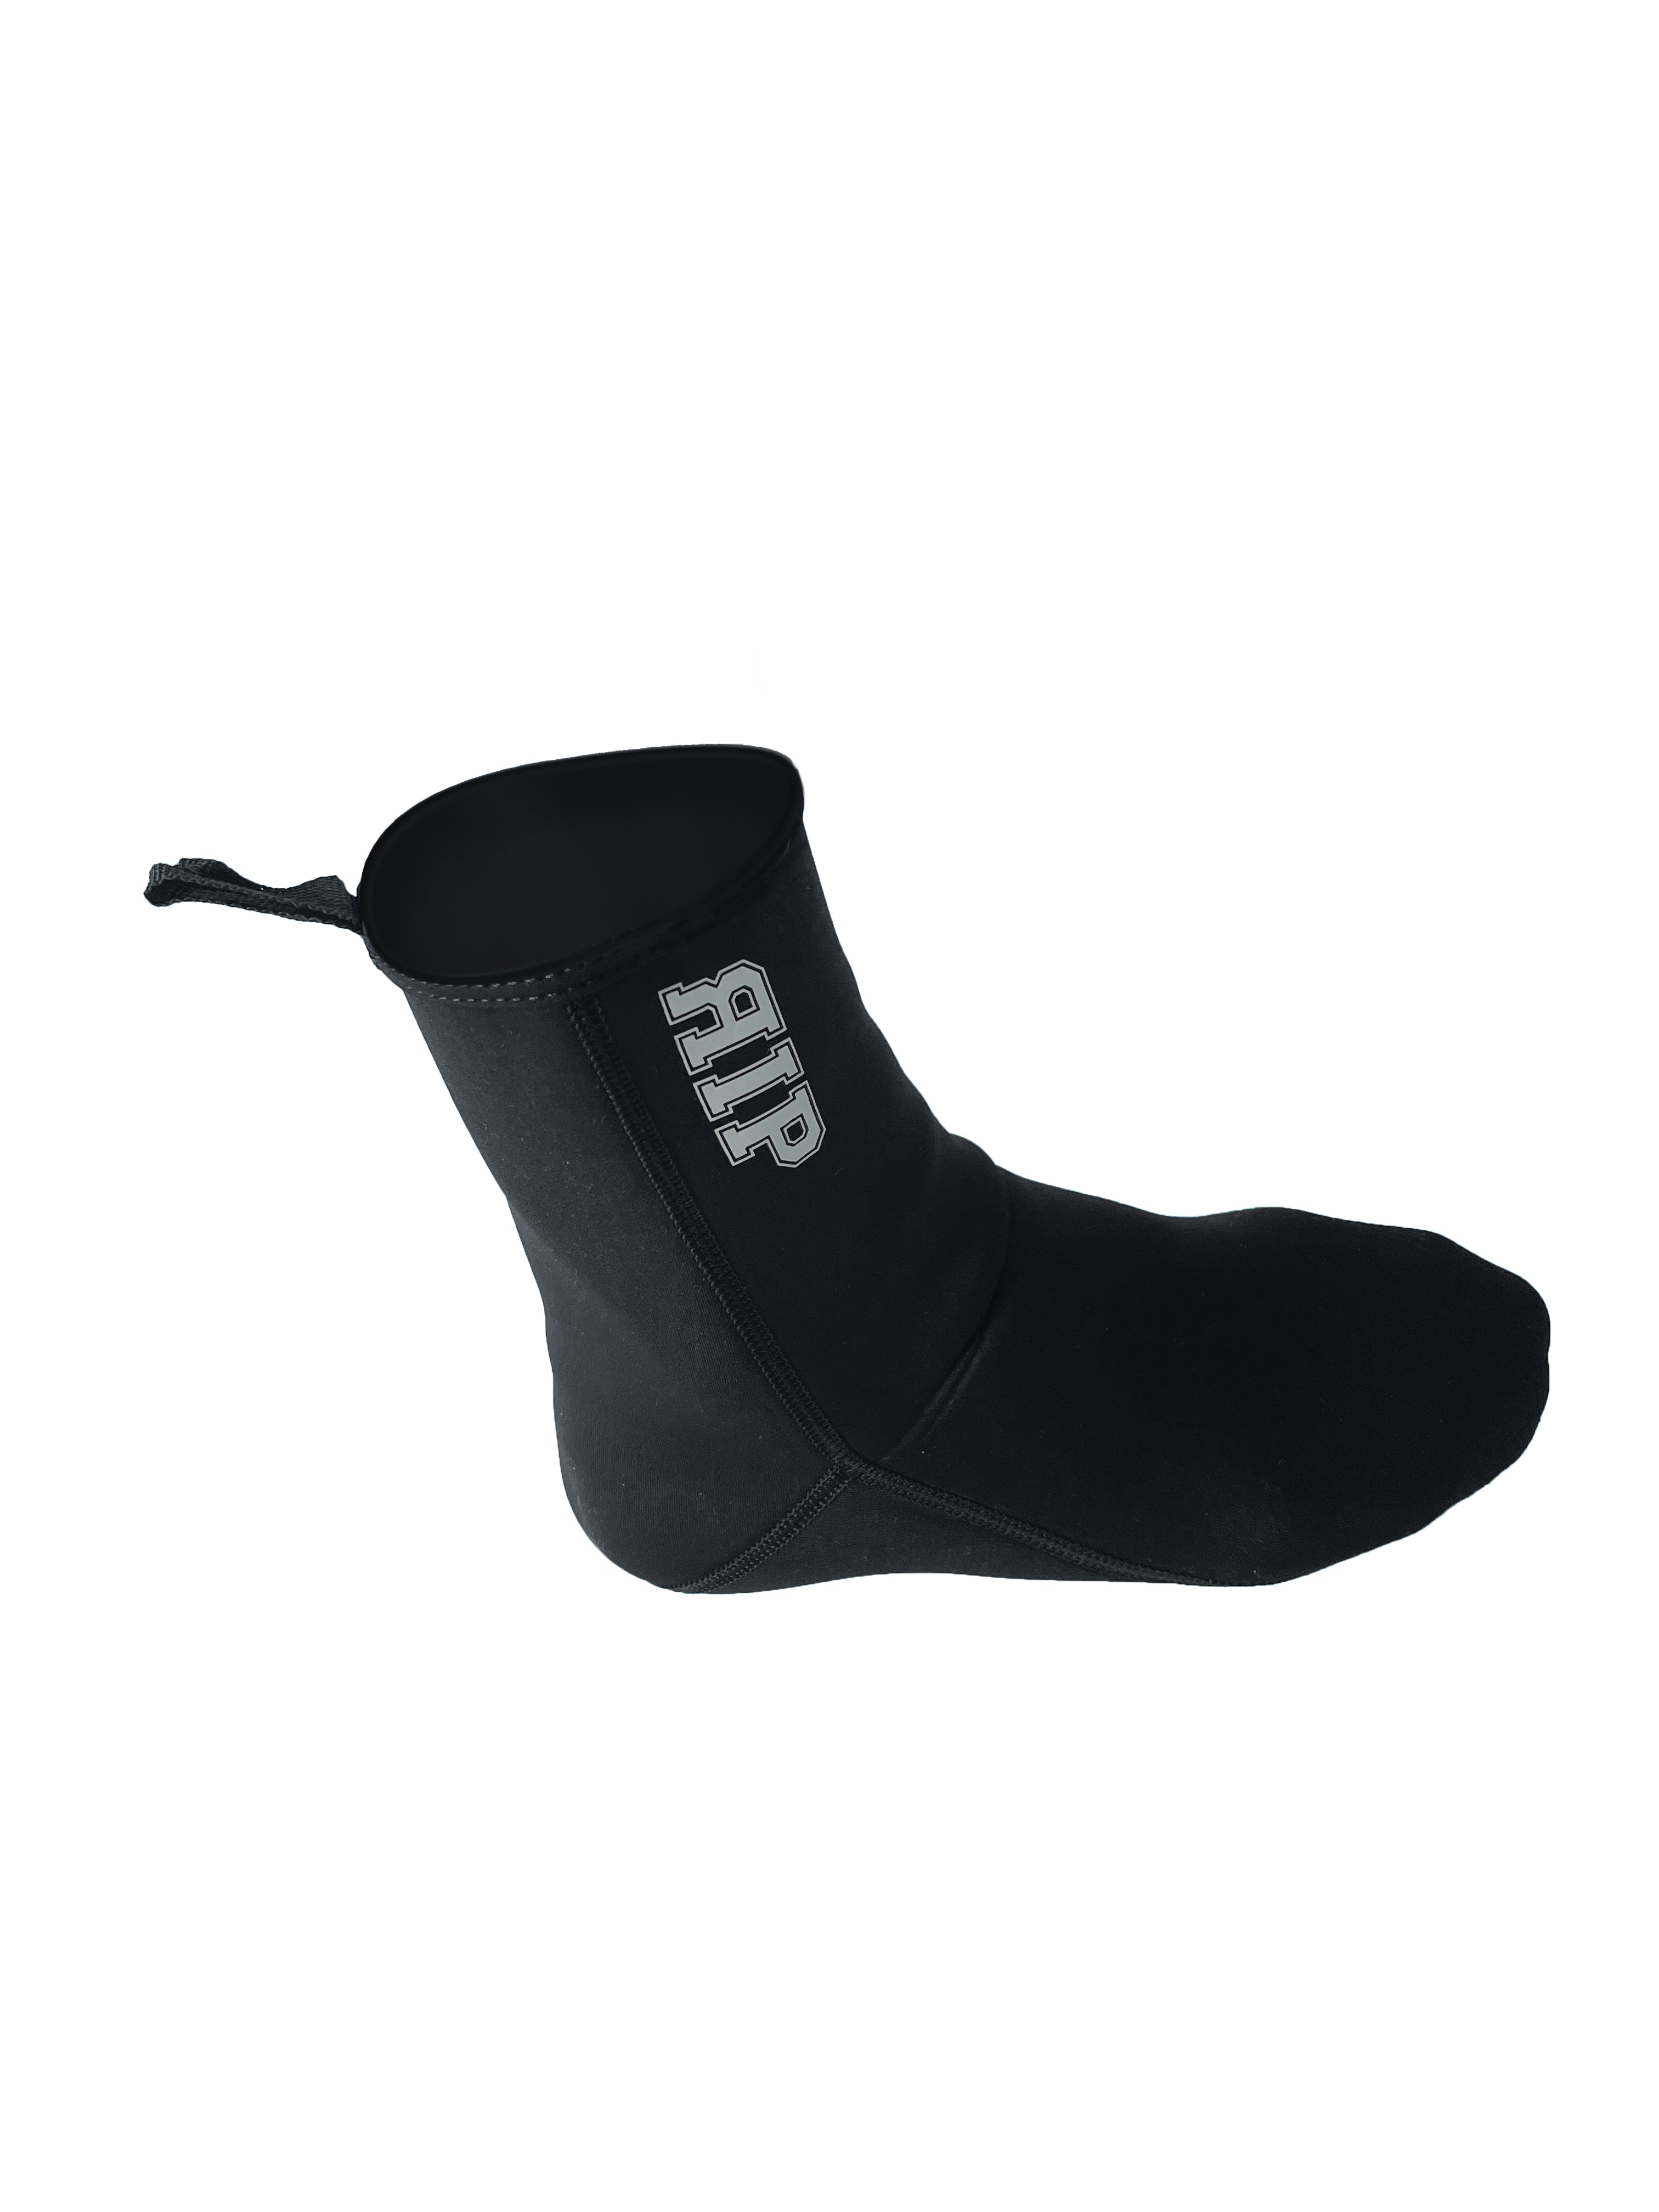 RIP Bodyboard - Bodyboard fins socks 3mm - Winter